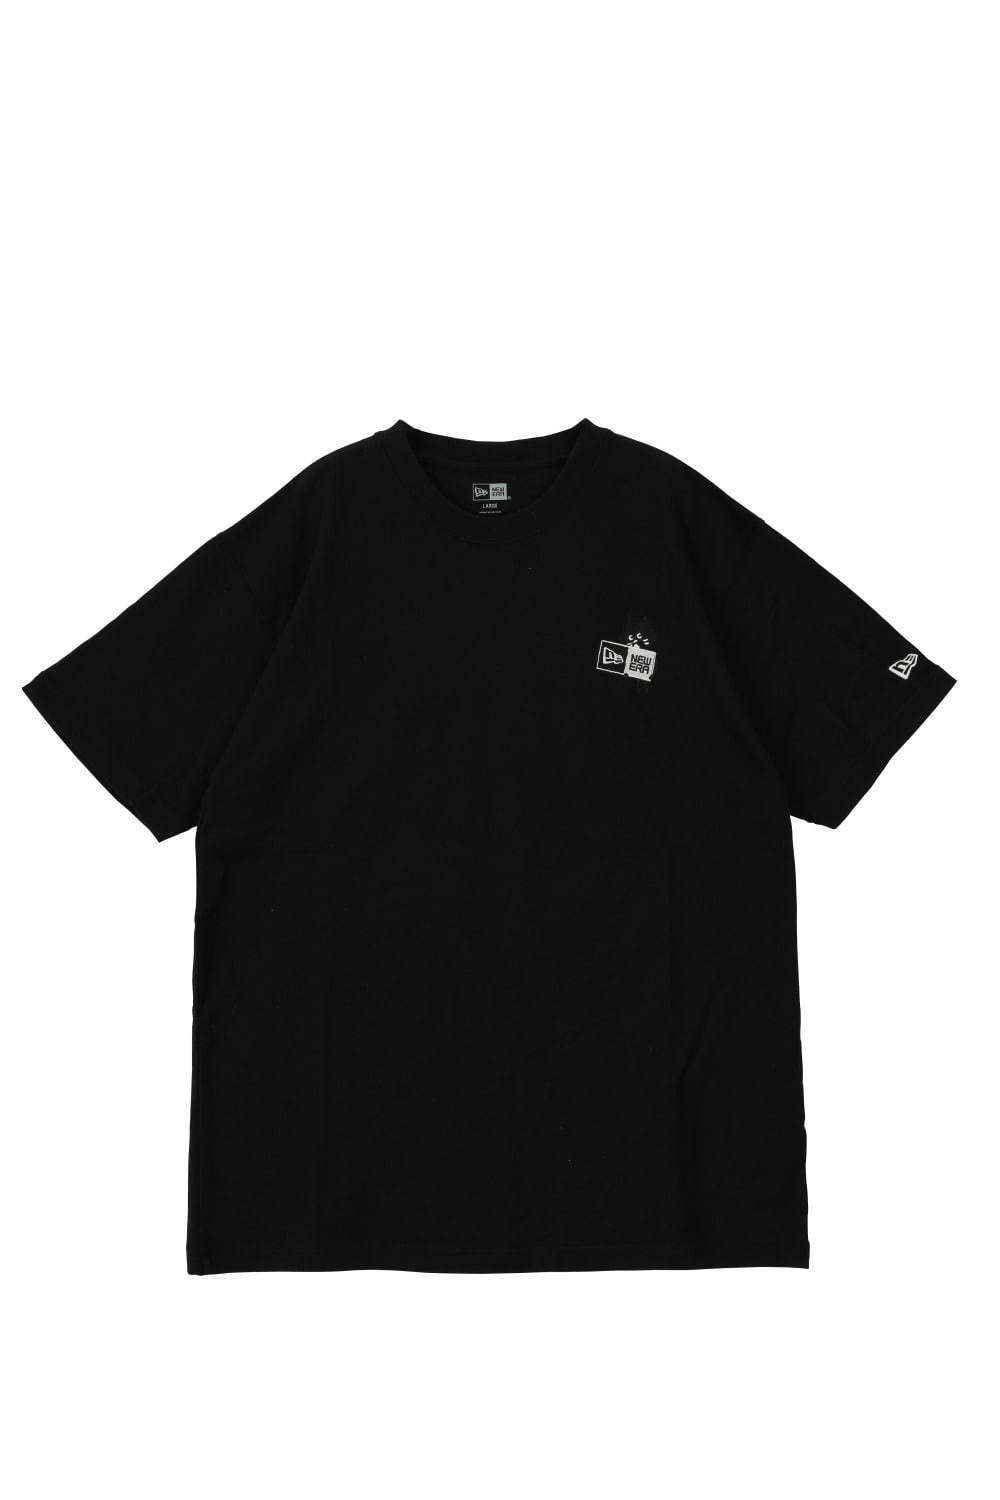 Tシャツ 6,600円(税込)